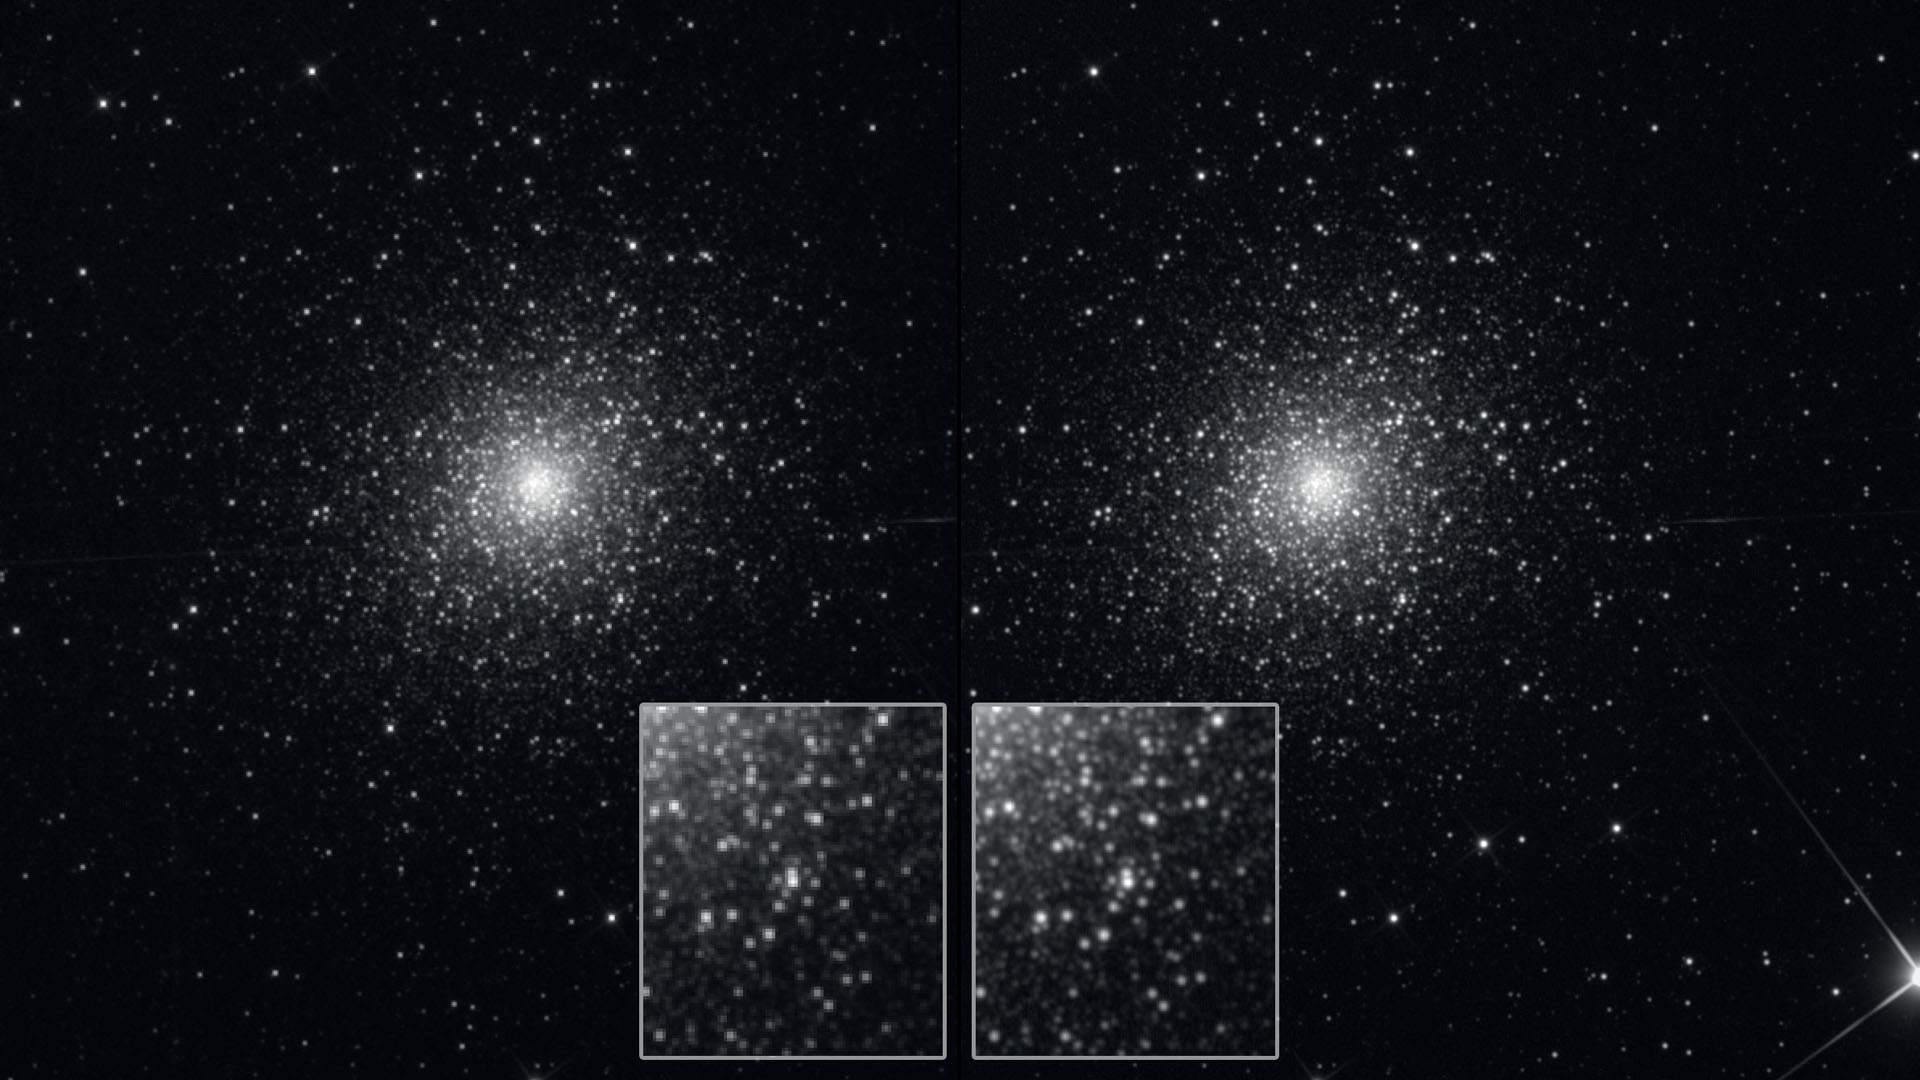 Roiul stelar globular M5, în stânga cu expunere normală, iar în dreapta, cu drizzle-stacking de 20 de fotografii a 300s fiecare. Versiunea normală a fost redimensionată, spre comparație, la aceeași scară ca fotografia cu drizzle. Configurarea fotografiei s-a făcut în zona de undersampling, ceea ce se poate observa din stelele care nu sunt reproduse în mod ideal și care apar oarecum pixelate. Un refractor cu o apertură de 105 mm și o distanță focală de 670 mm a fost echipat cu un aparat de fotografiat cu pixeli de 9μm. Prin urmare, samplingul este de 2,77"/pixel, cu o rezoluție teoretică de 1,14". Prin tehnica „drizzle” (rezultatul din dreapta) este posibilă o redare mai fină a densității mari de stele - perechile apropiate de stele sunt separate mai clar. M. Weigand